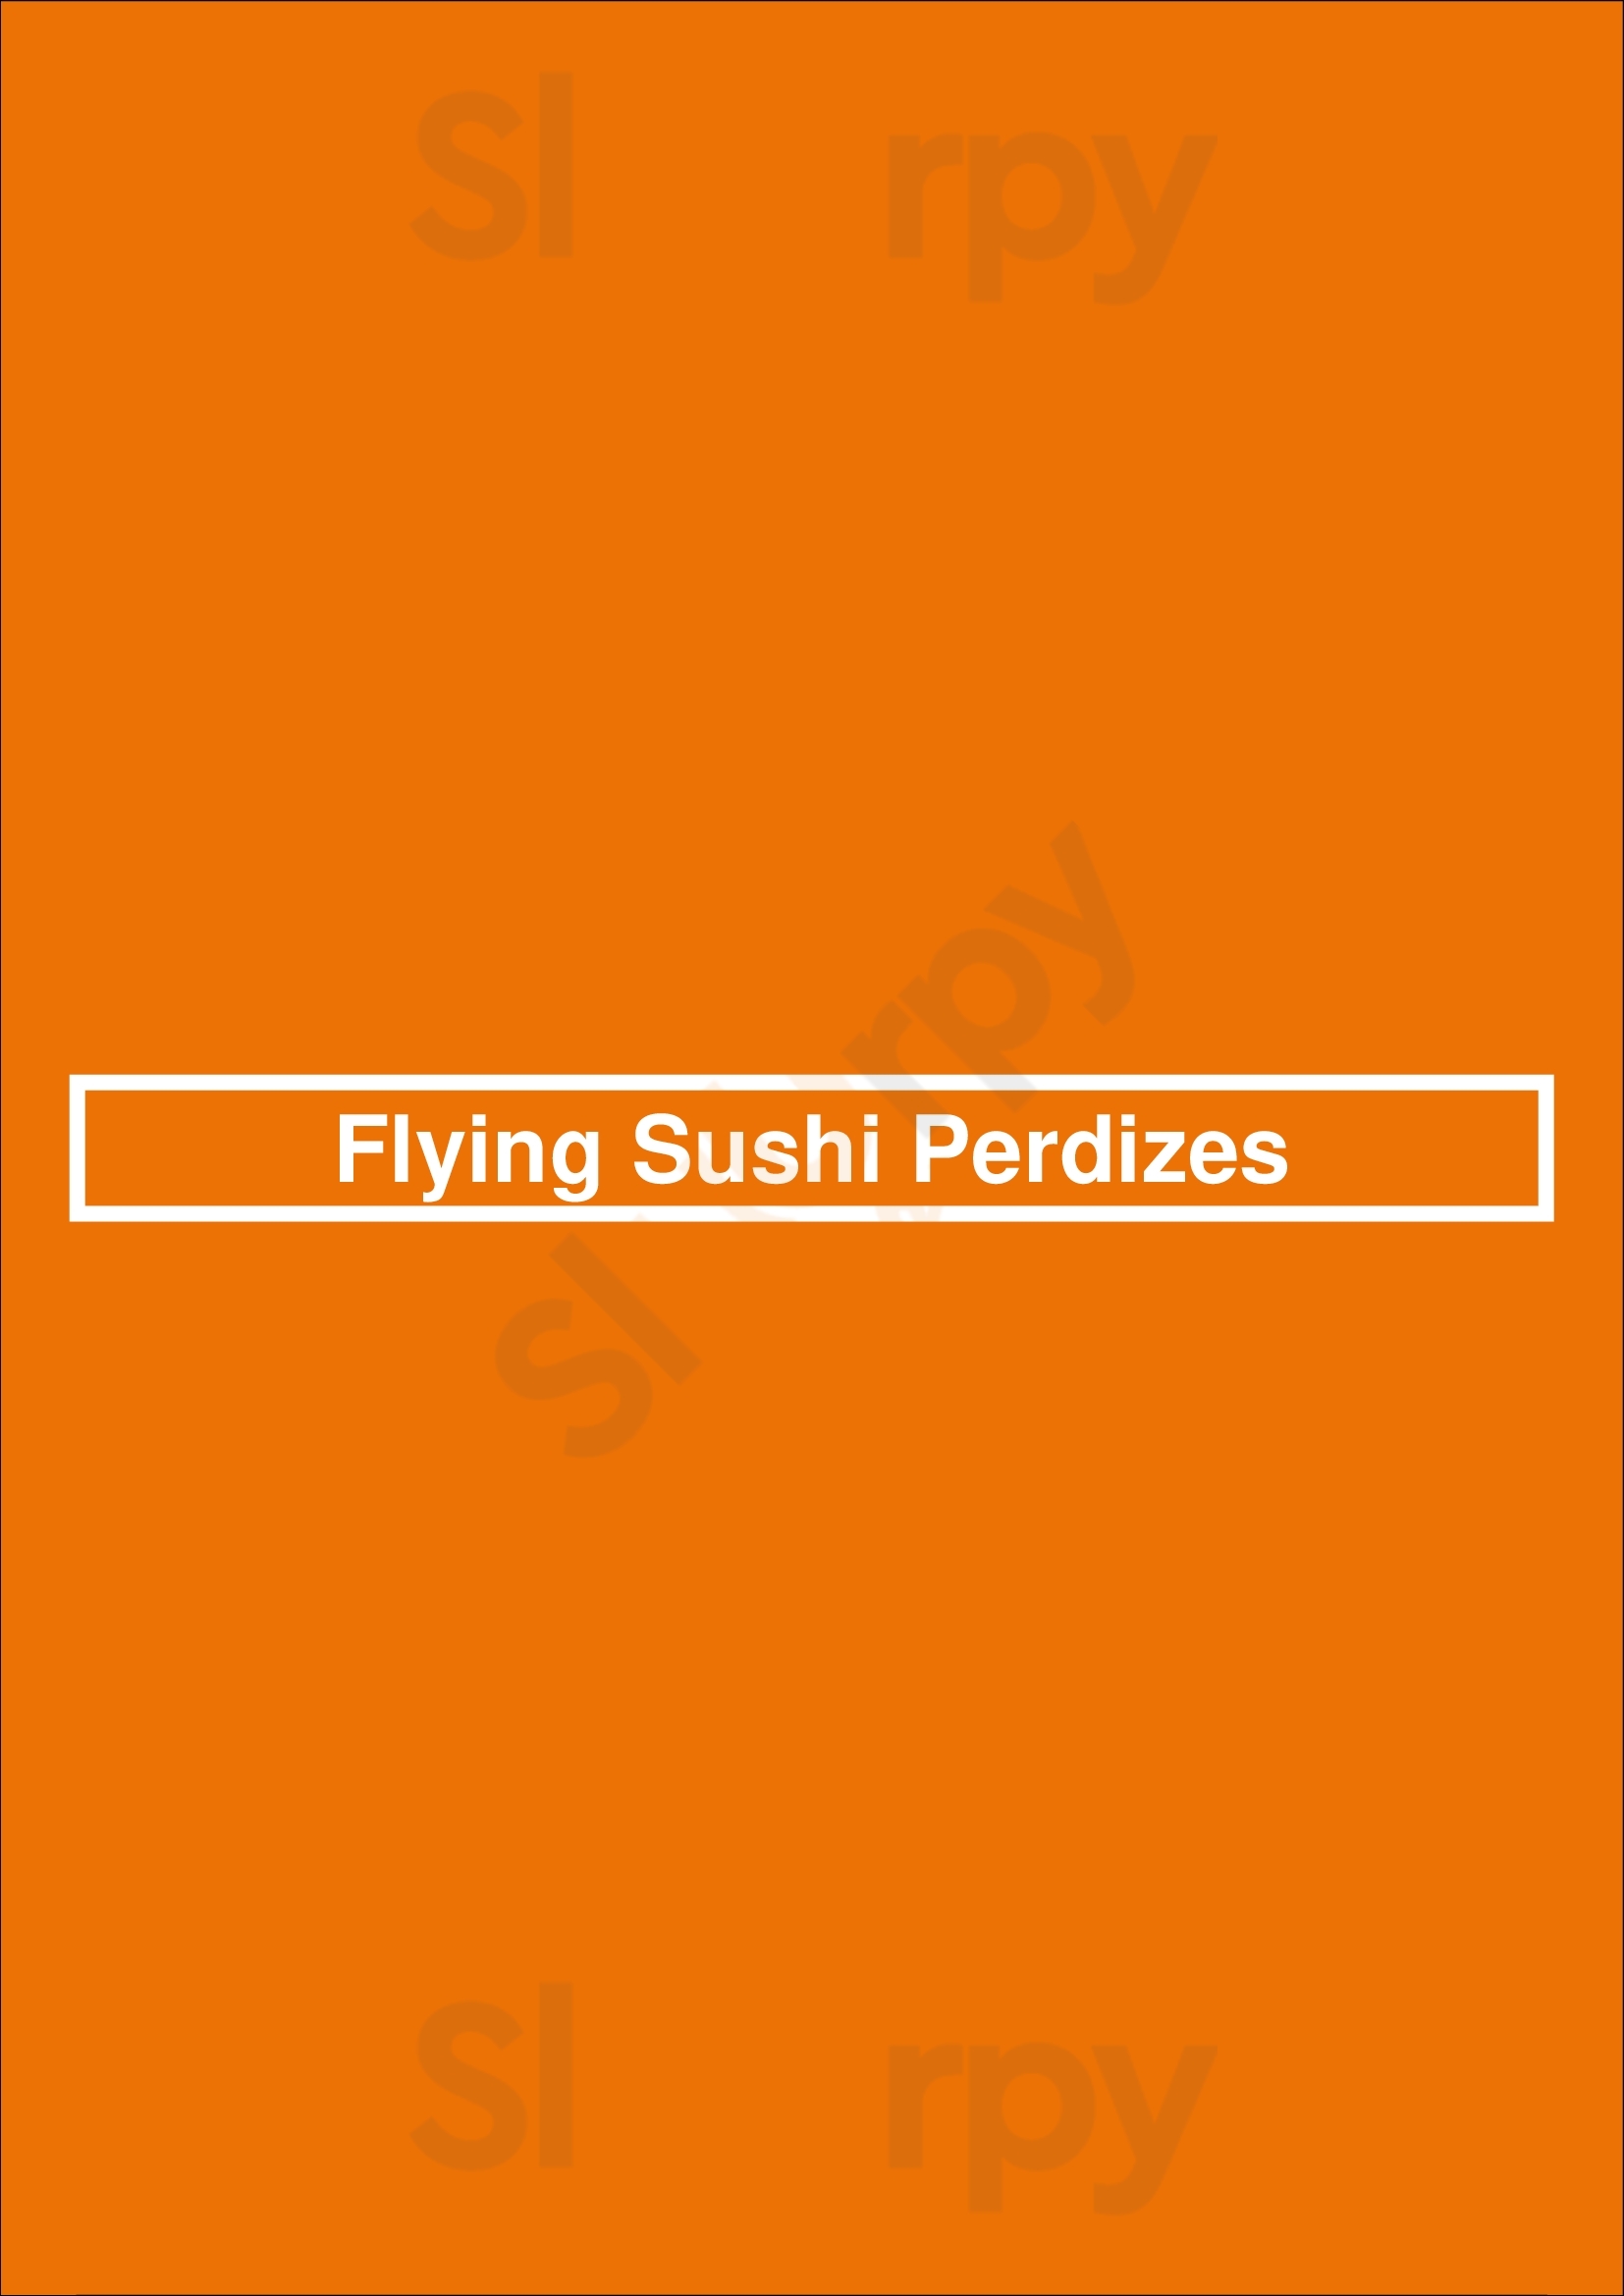 Flying Sushi Perdizes São Paulo Menu - 1